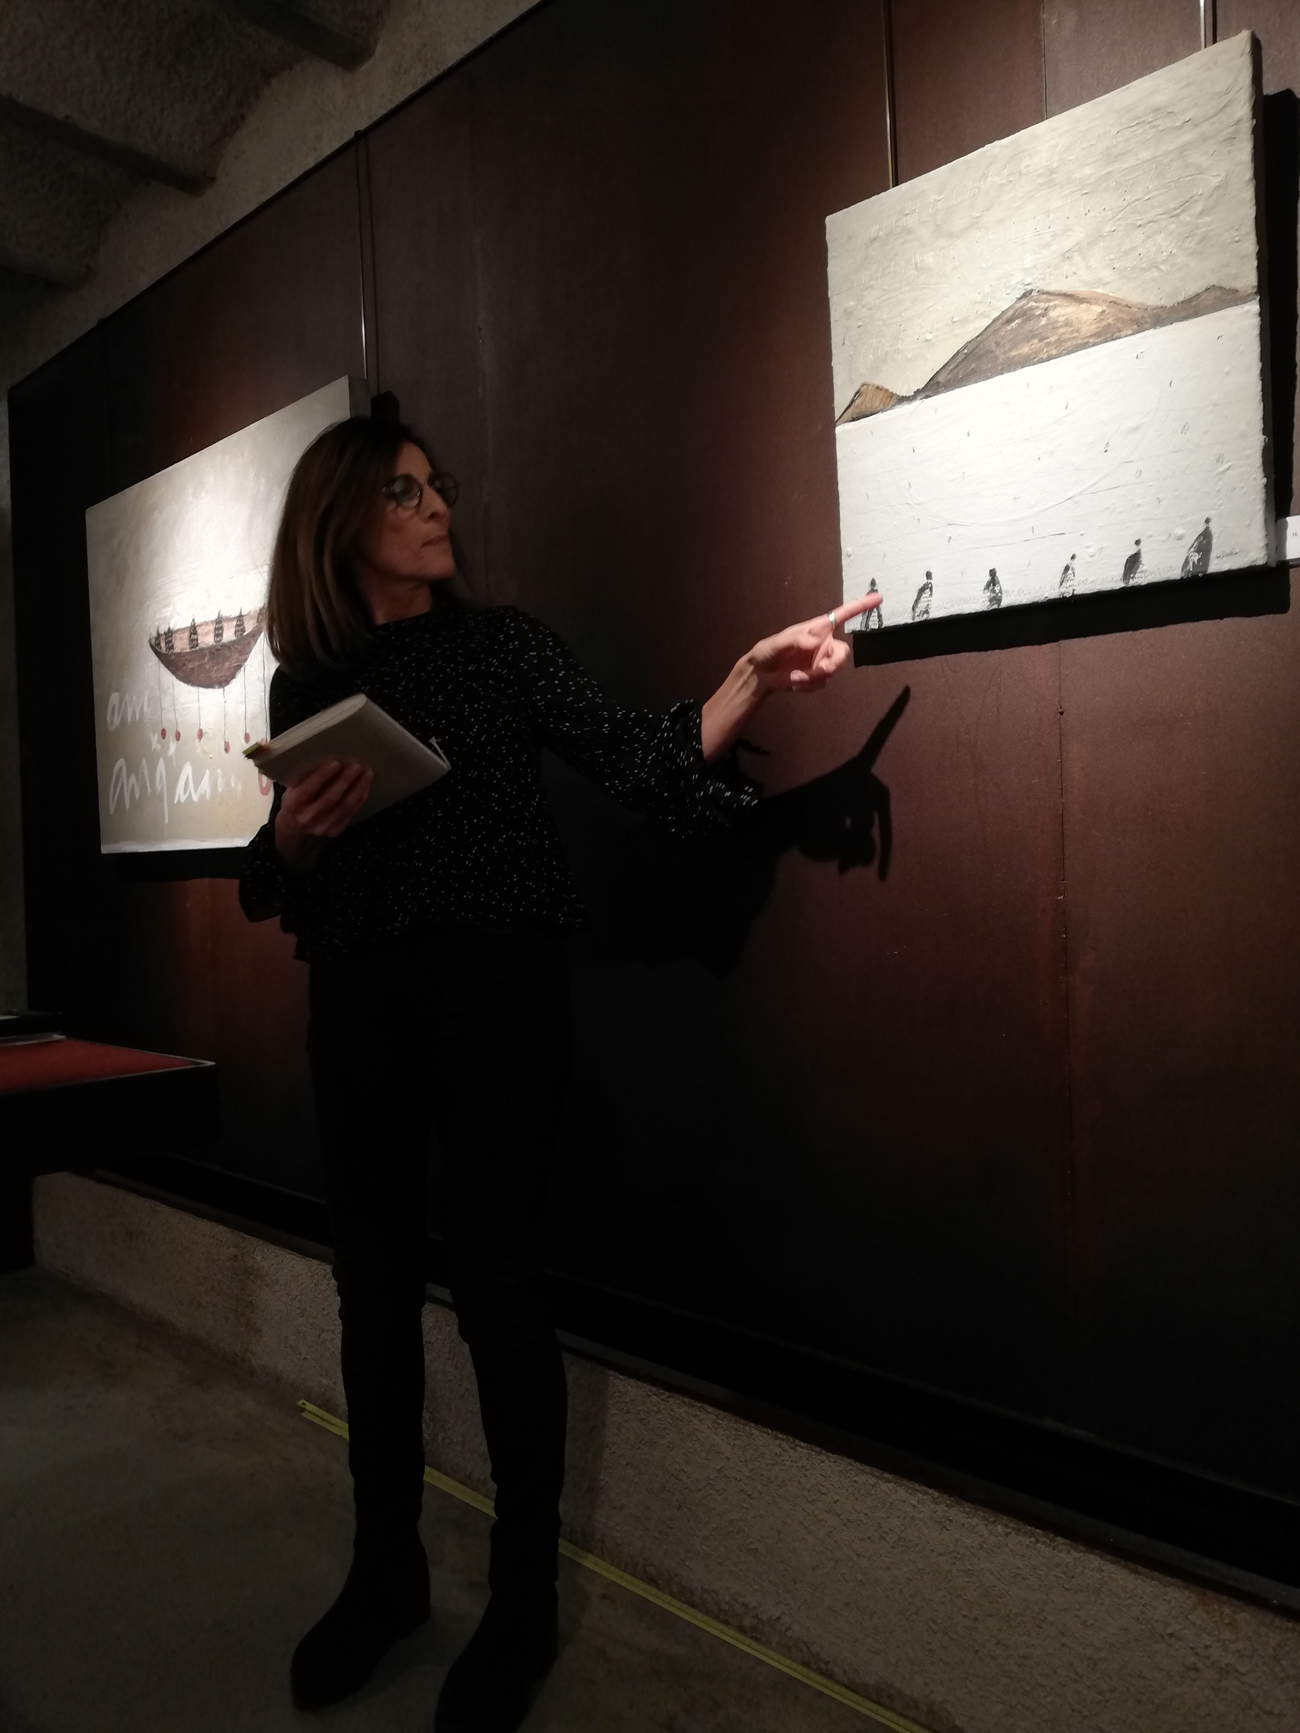 Visita guiada a l'exposició "Espais per al silenci" de Marta Ballvé